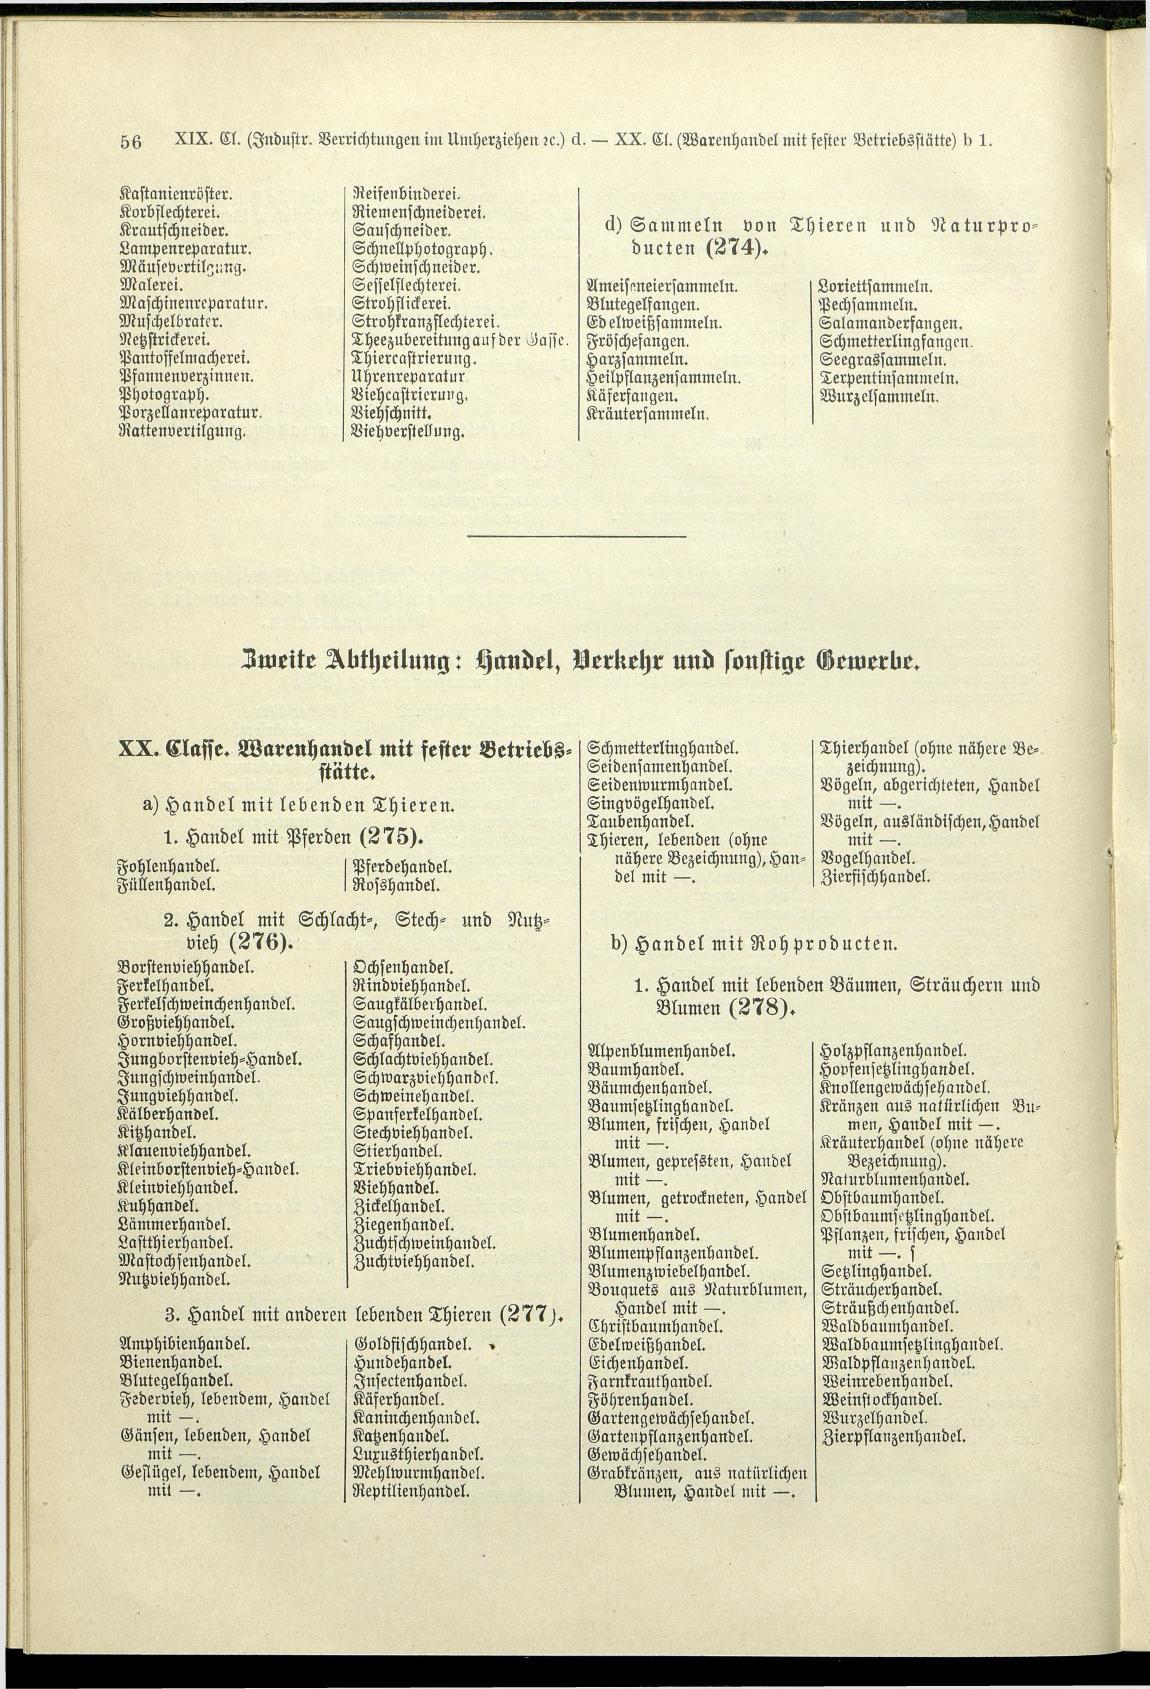 Verzeichnis der Gewerbe der im Reichsrathe vertretenen Königreiche und Länder 1900 - Seite 60